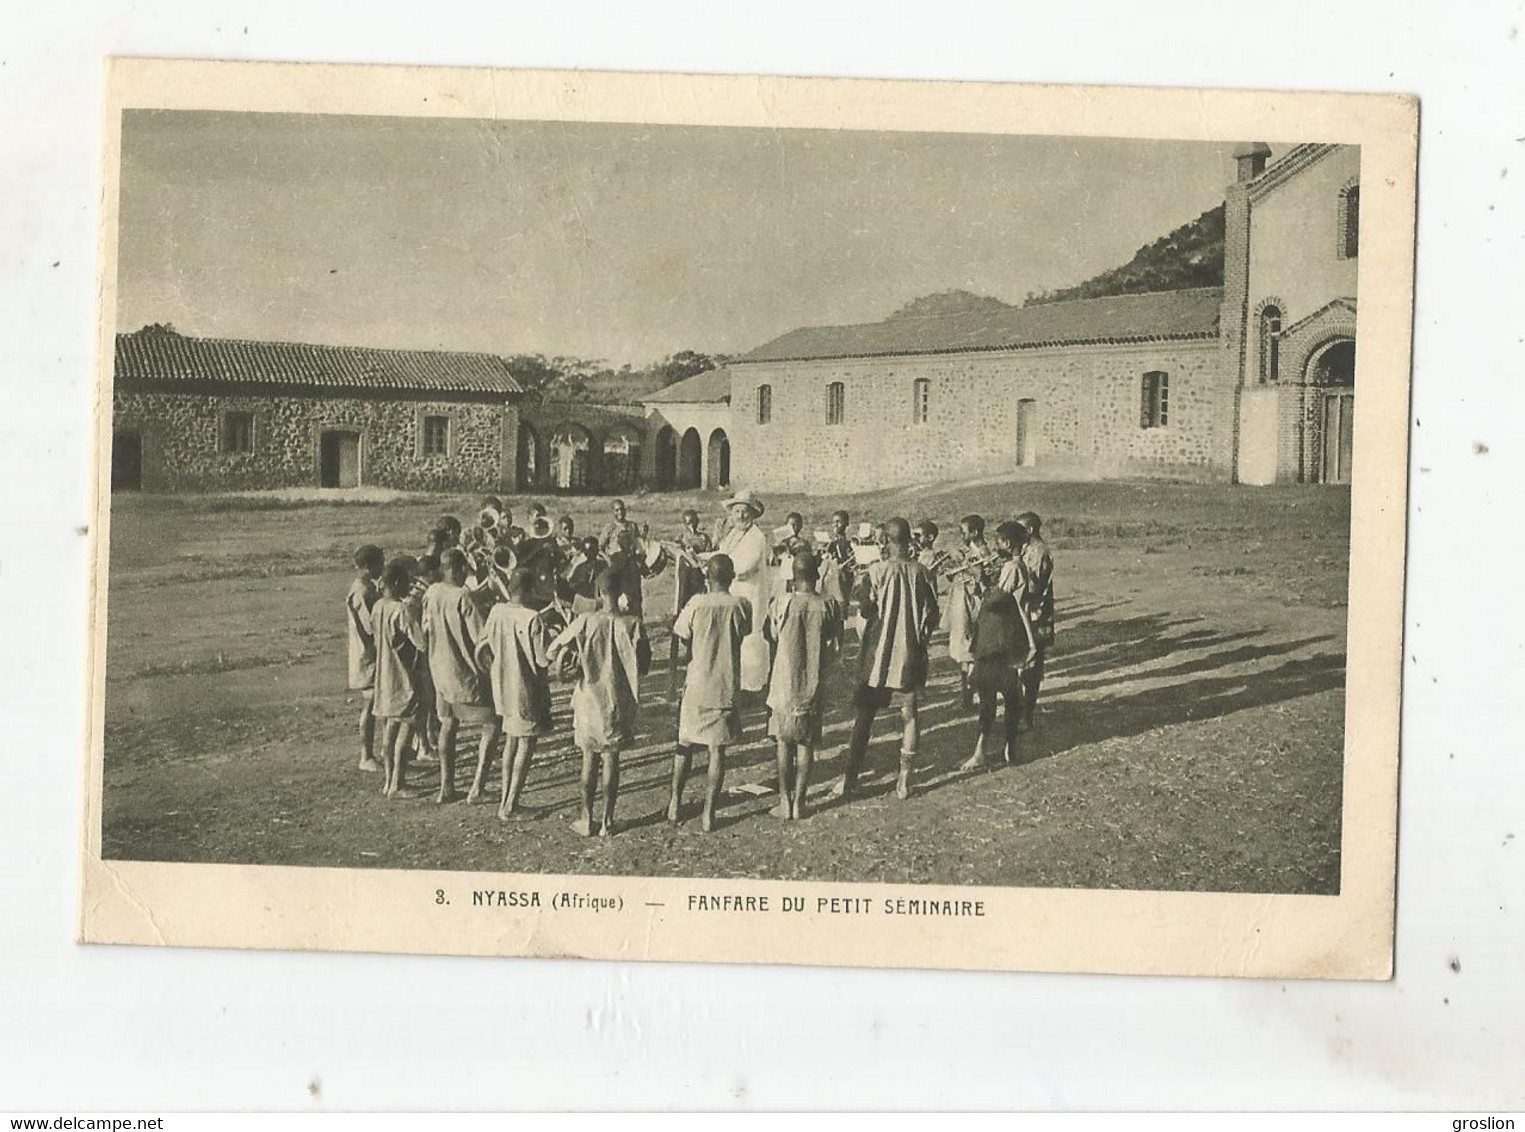 NYASSA (AFRIQUE) 3 FANFARE DU PETIT SEMINAIRE (BELLE ANIMATION)  1946 - Mozambique